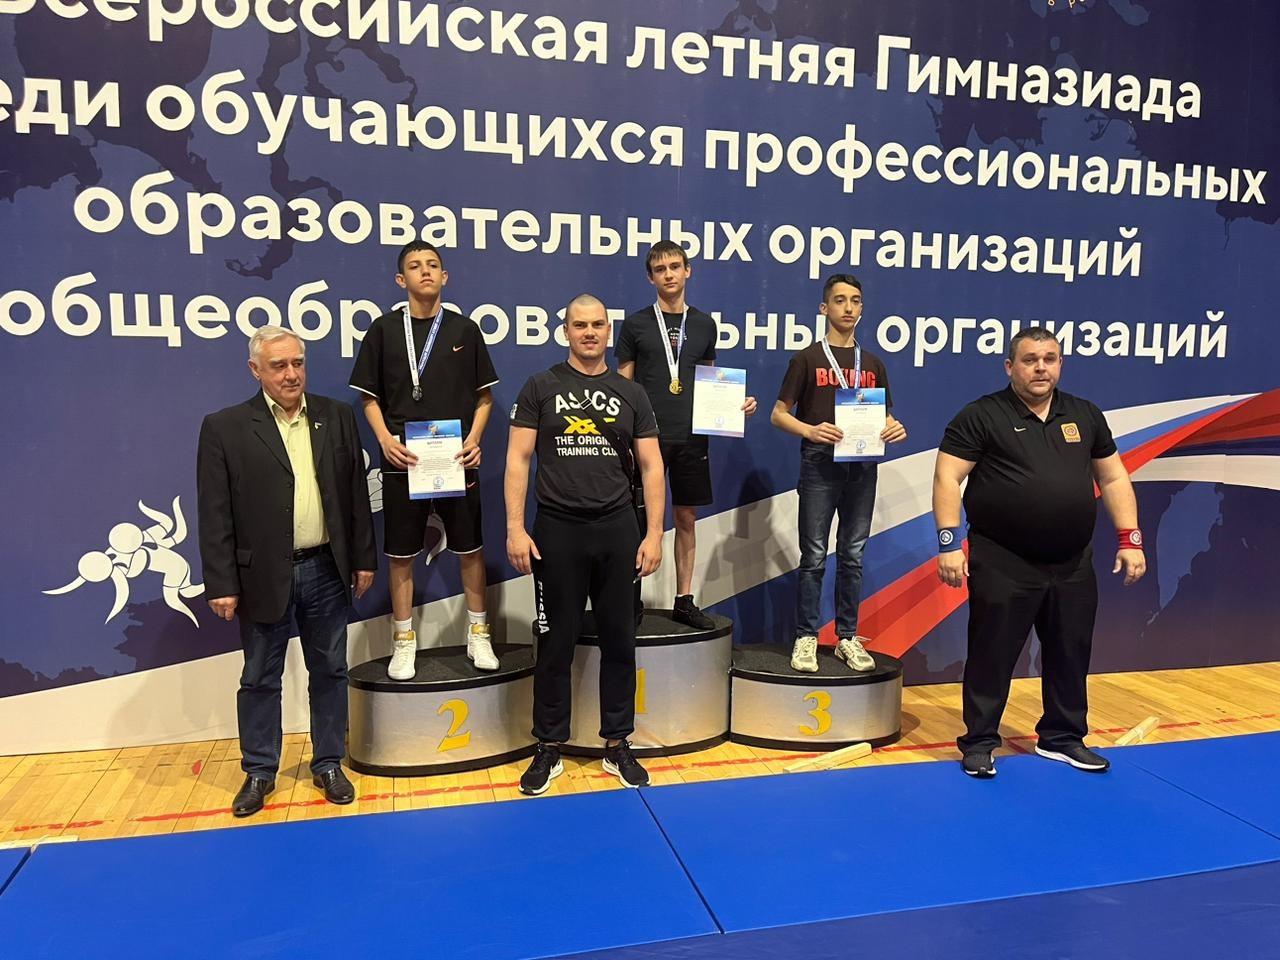 Орловские борцы завоевали медали всех проб на Всероссийской Гимназиаде